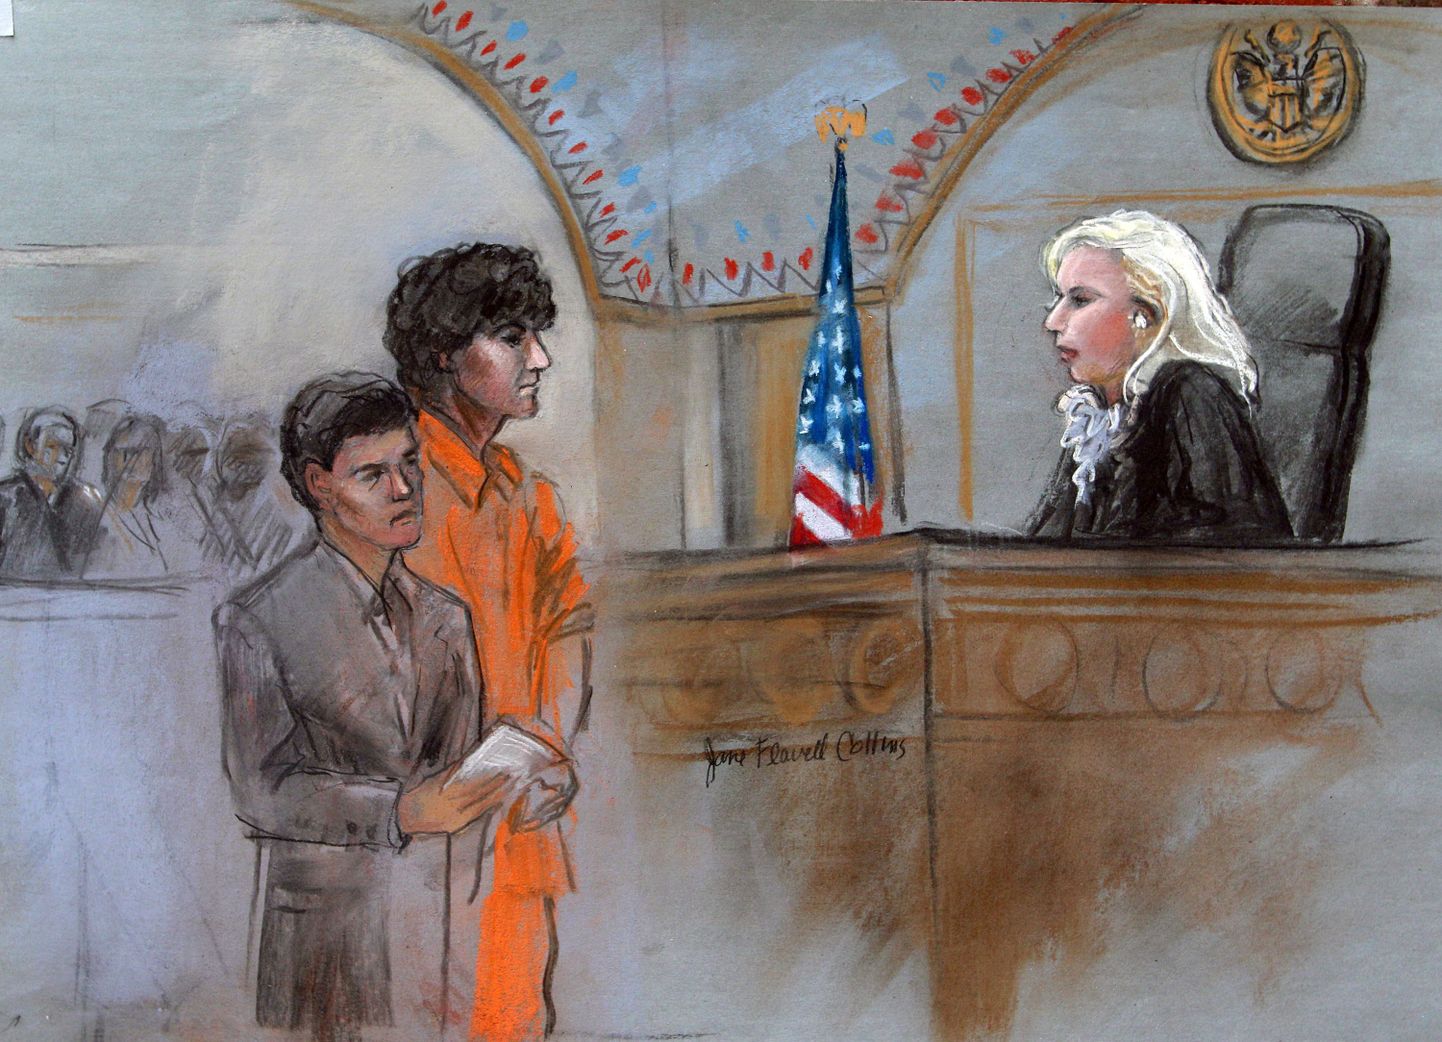 Kohtukunstniku sketš Džohhar Tsarnajevist ja tema advokaadist.